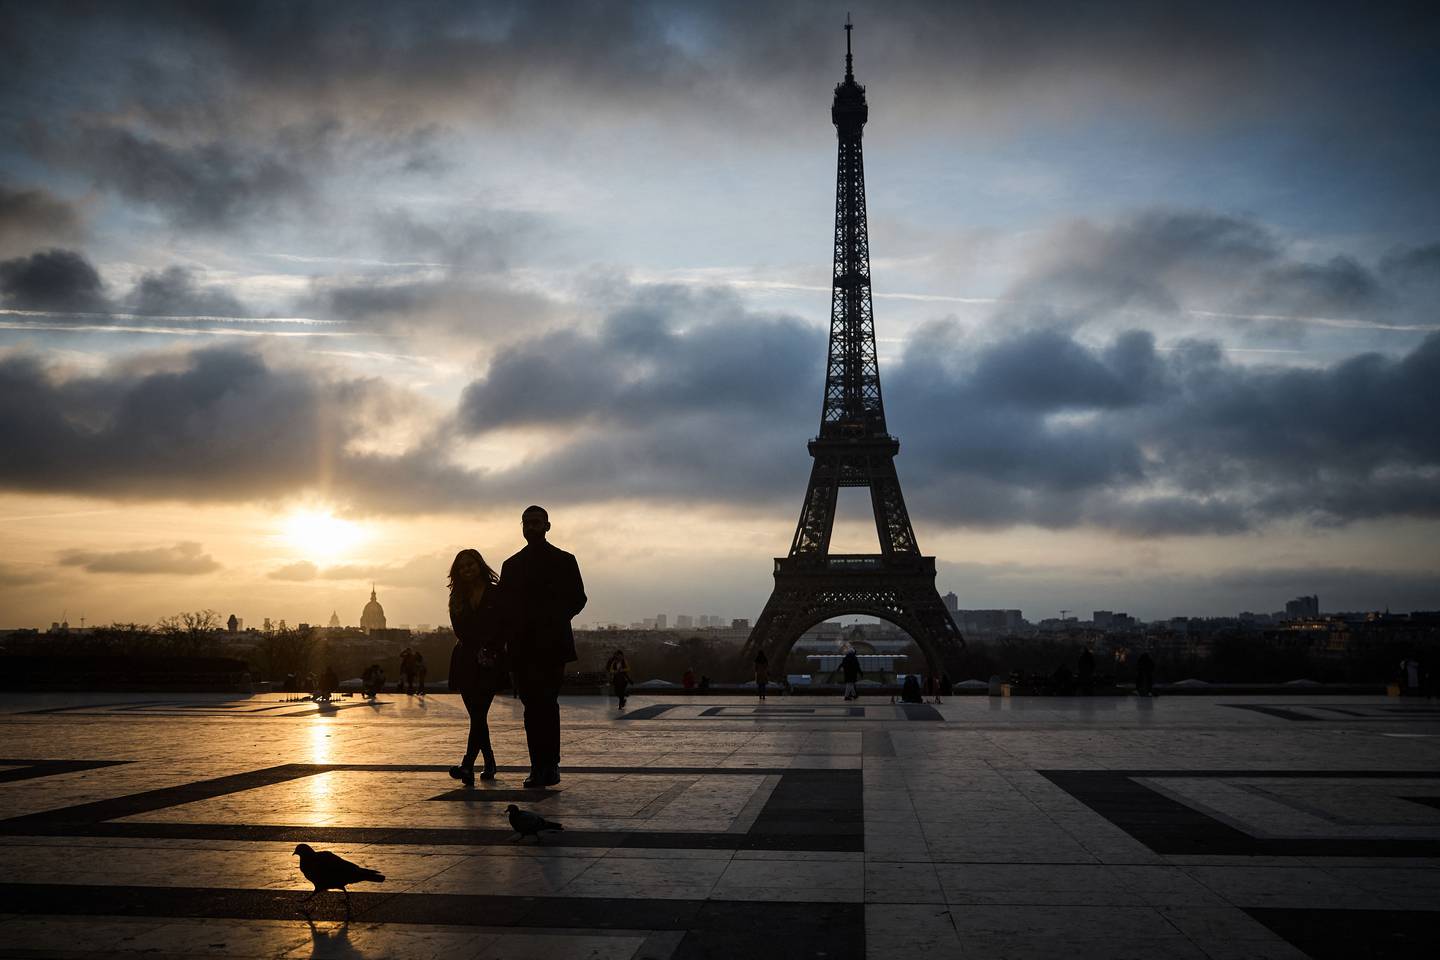 Una pareja de turistas observa de lejos la Torre Eiffel. No lograron ingresar a la atracción parisina porque se encuentra cerrada.